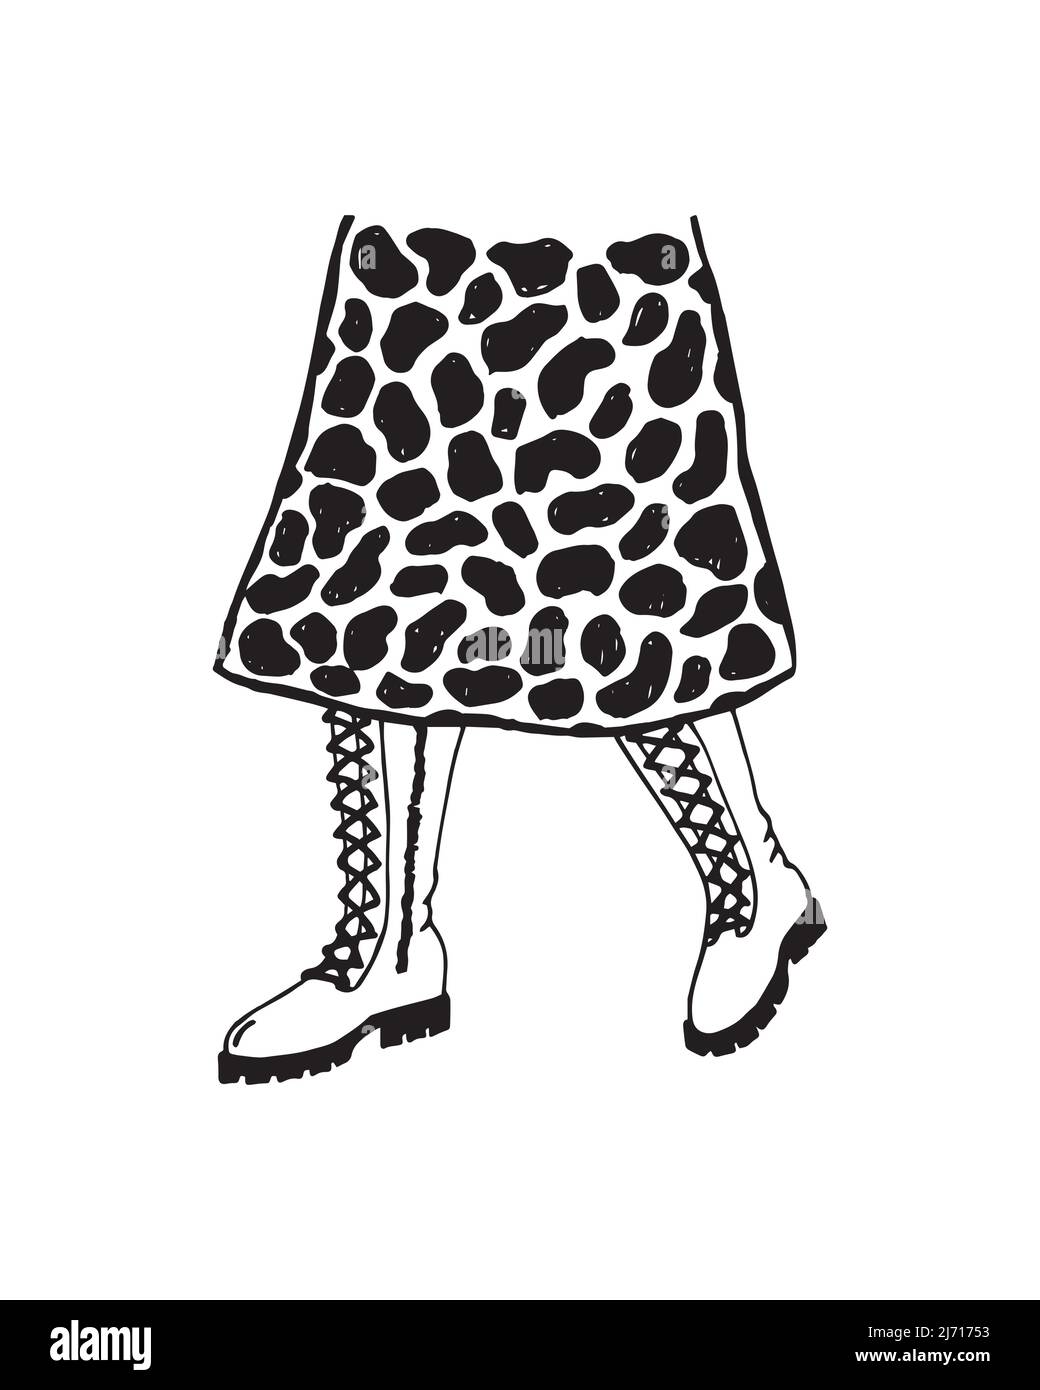 Illustrazione vettoriale della moda di una ragazza in stivali alla moda con suole ruvide e una gonna stampa leopardo. Moda casual. Illustrazione Vettoriale